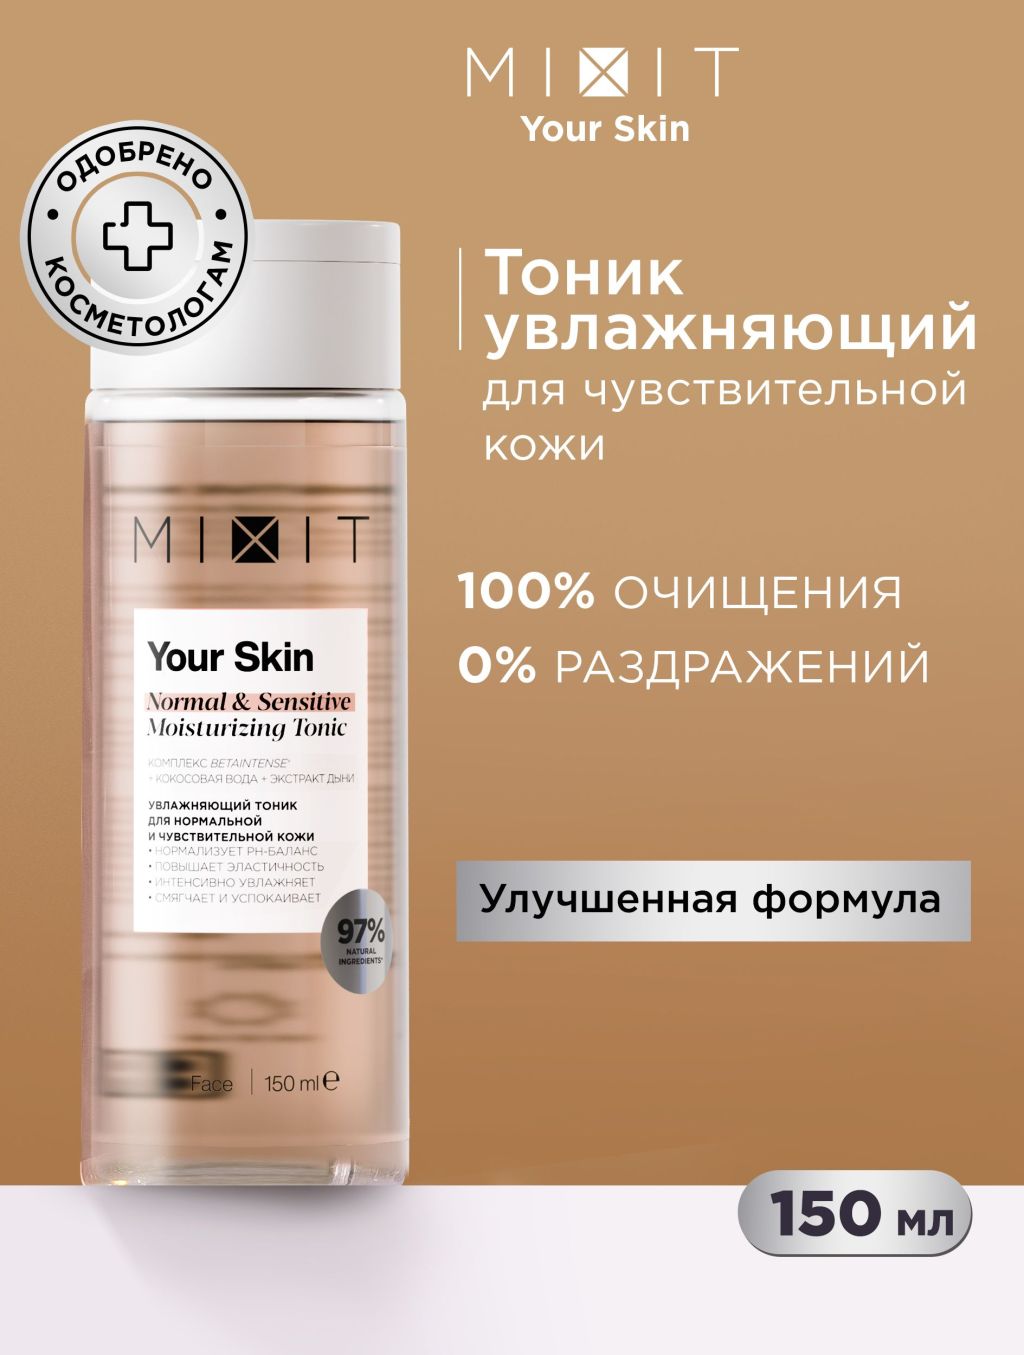 Тоник для лица Mixit Your Skin увлажняющий, для нормальной и чувствительной кожи, 150 мл